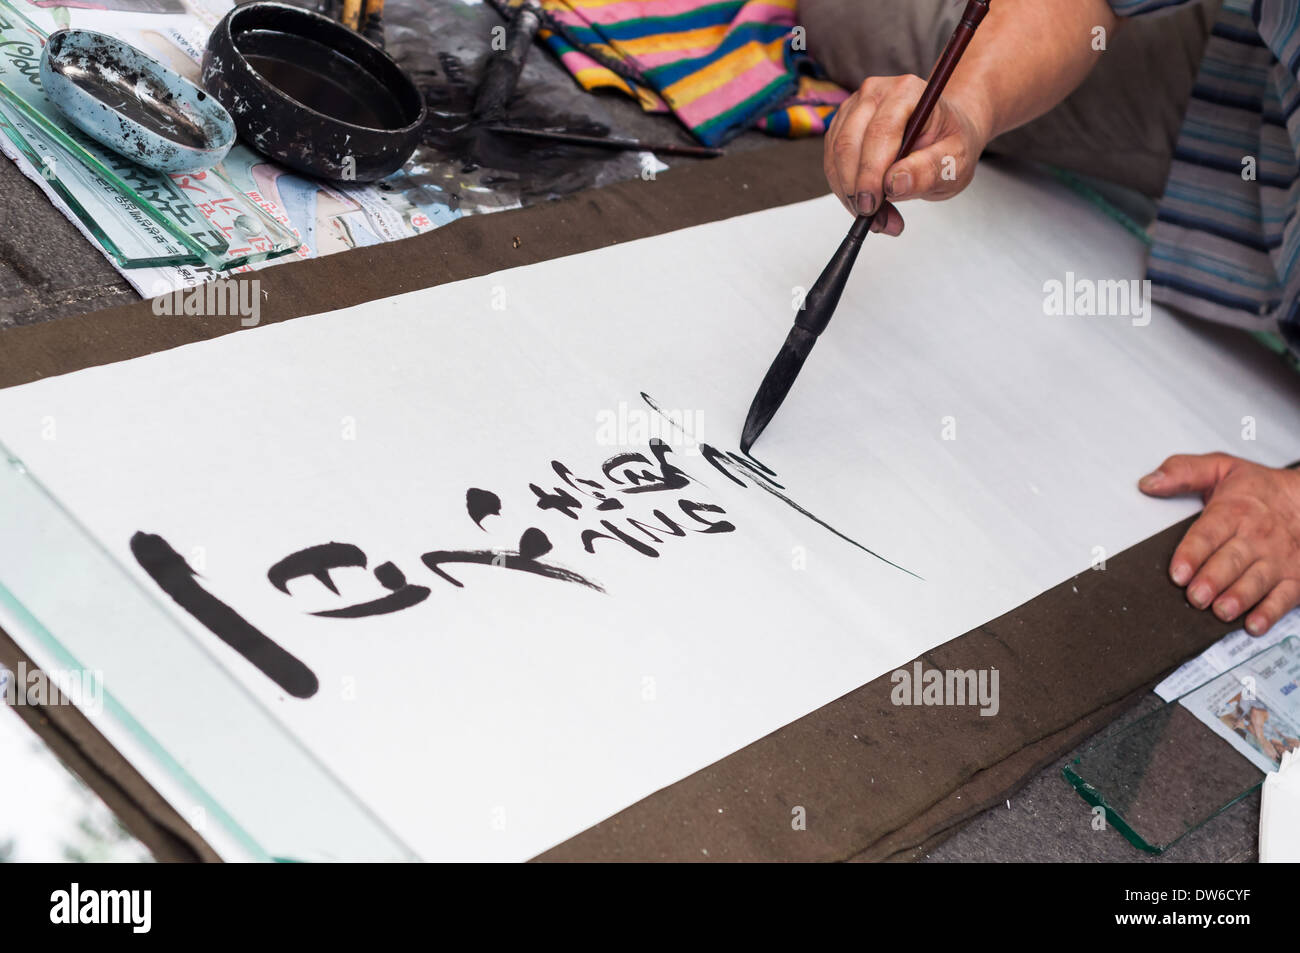 Un artiste de rue écrit hanja, ou des caractères chinois, sur une grande feuille de papier à un marché de rue à Insadong, Séoul. Banque D'Images